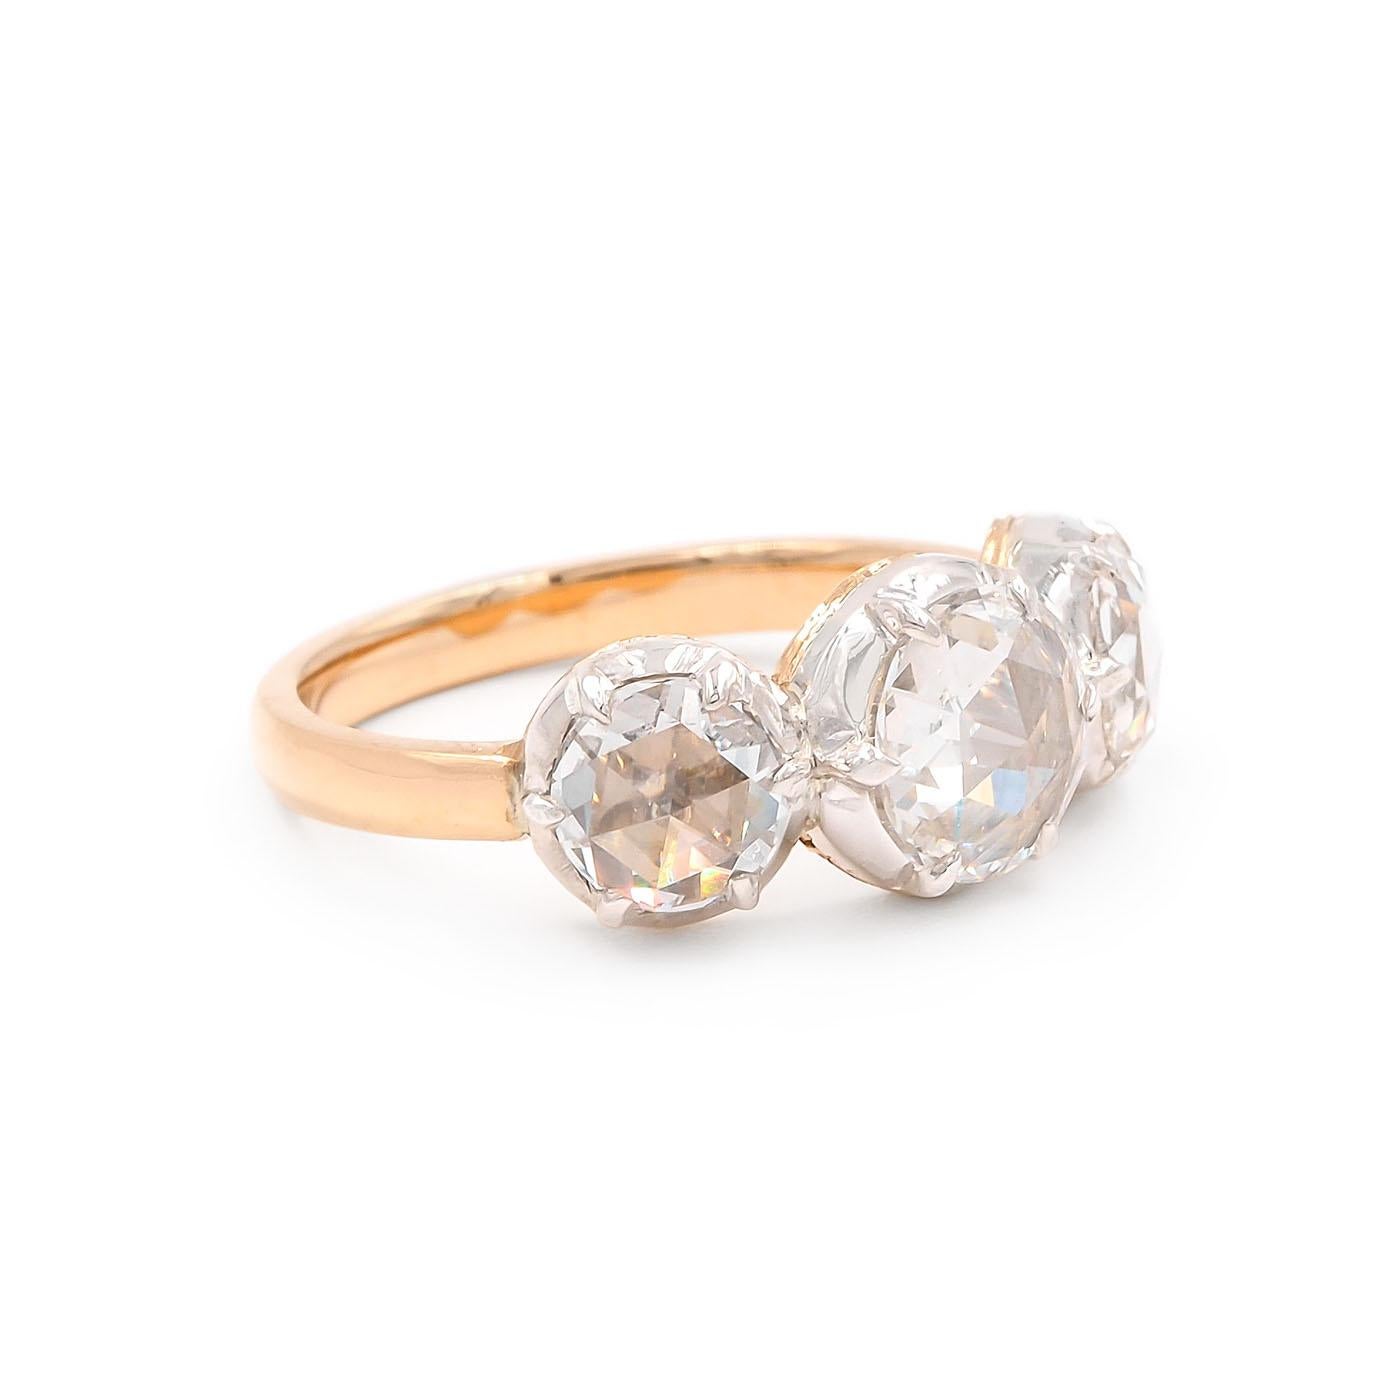 Viktorianisch inspirierte 1,66 Ctw. Diamantring mit 3 Steinen im Rosenschliff von Bespoke by Platt, bestehend aus 18 Karat Gelbgold und Silber. Die 3 zurückgewonnenen Rose-Cut-Diamanten wiegen insgesamt etwa 1,66 Karat (ein 0,75-Karat-Diamant in der